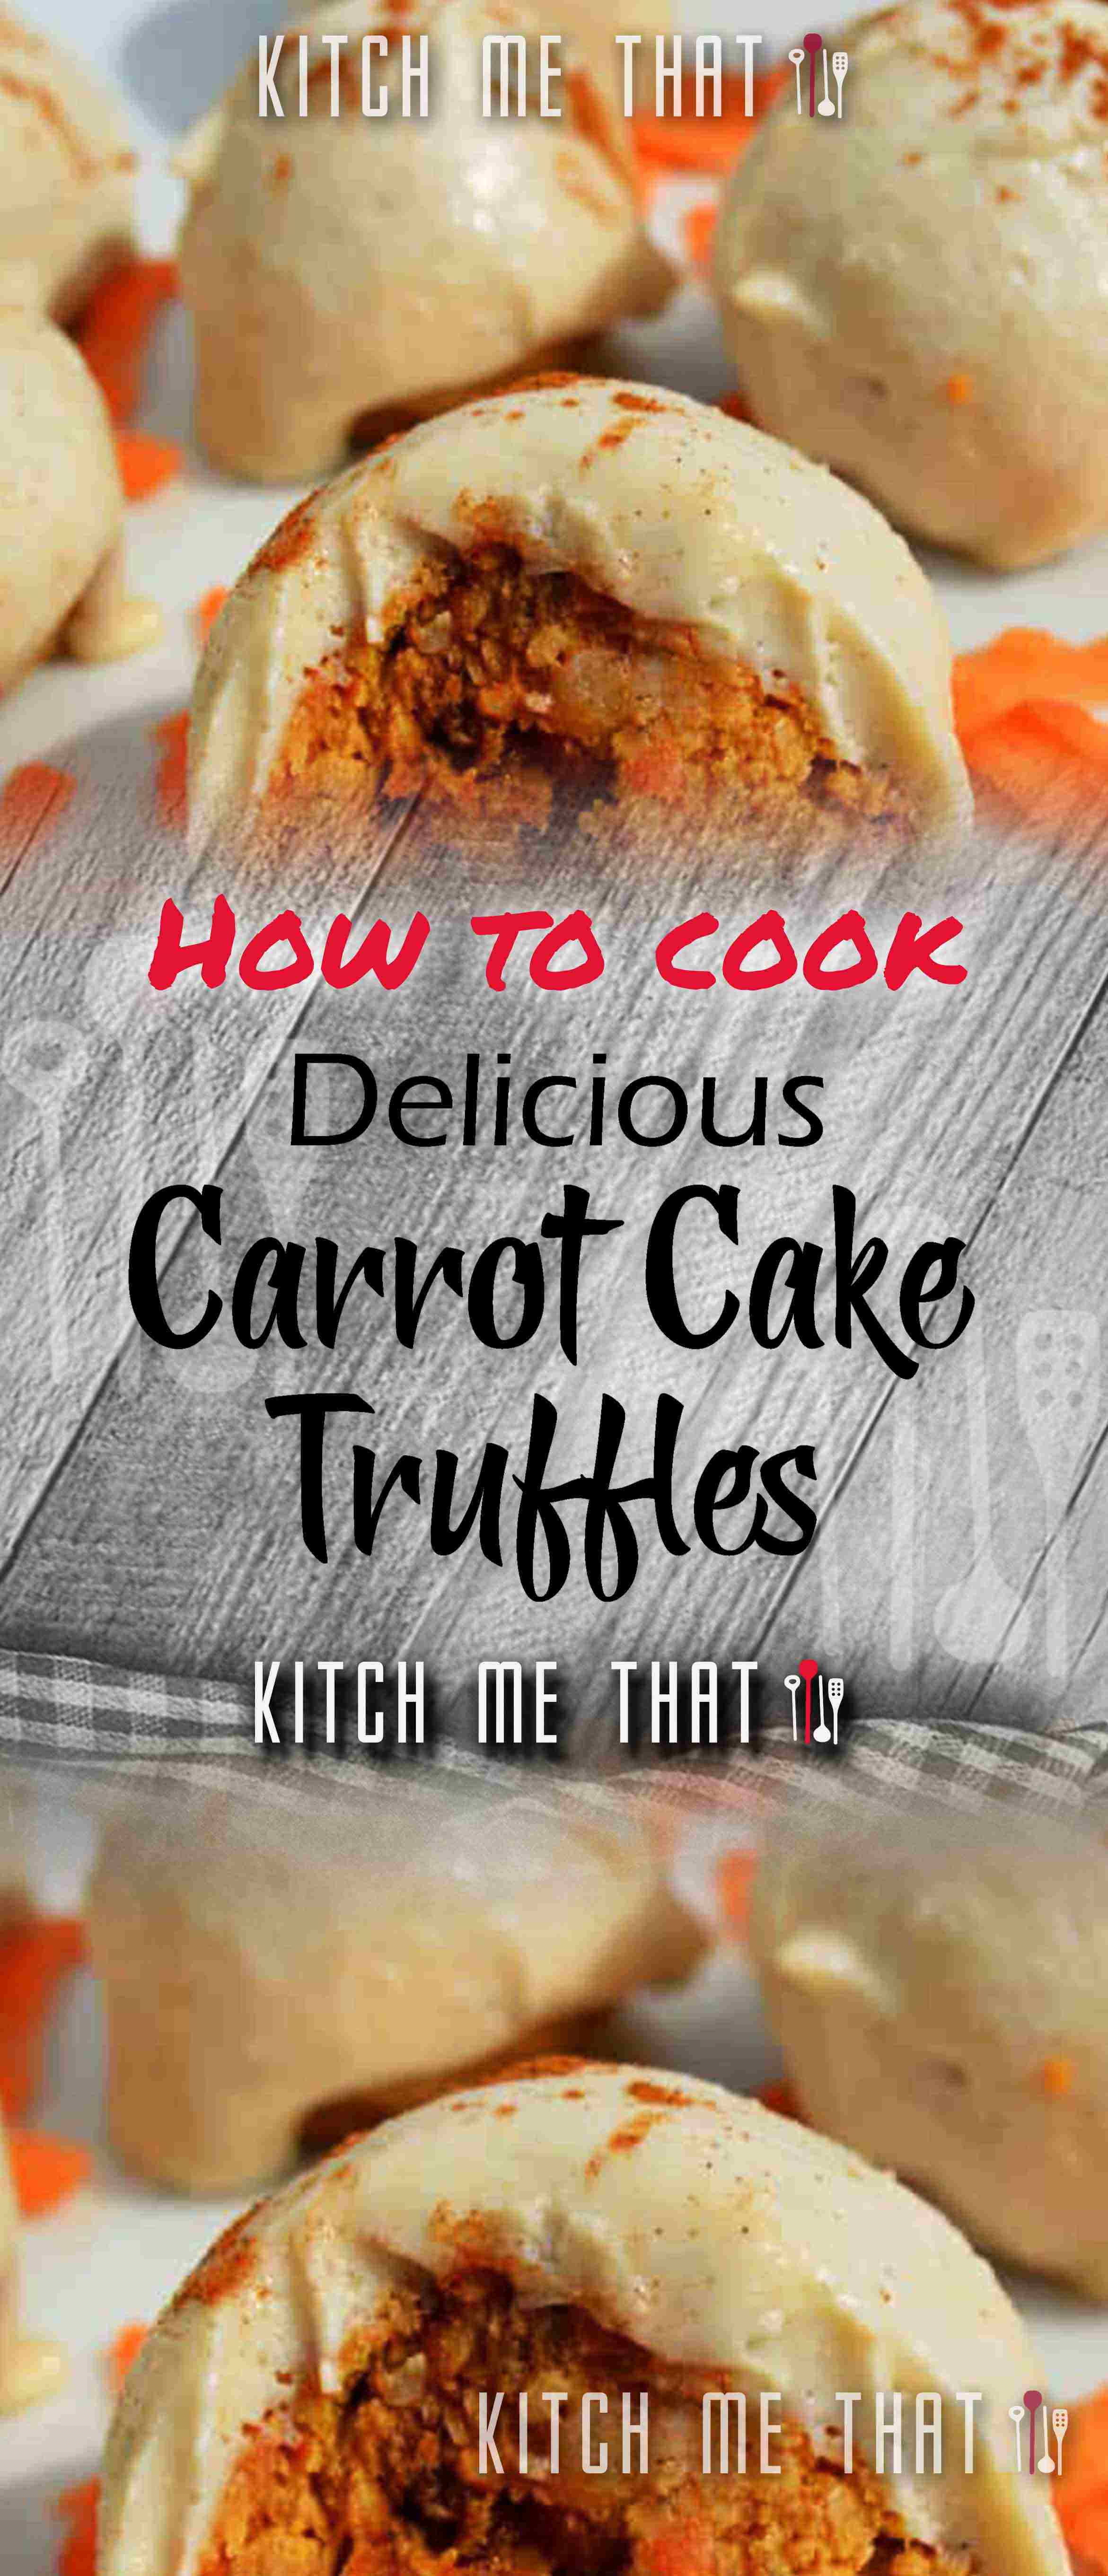 Carrot Cake Truffles